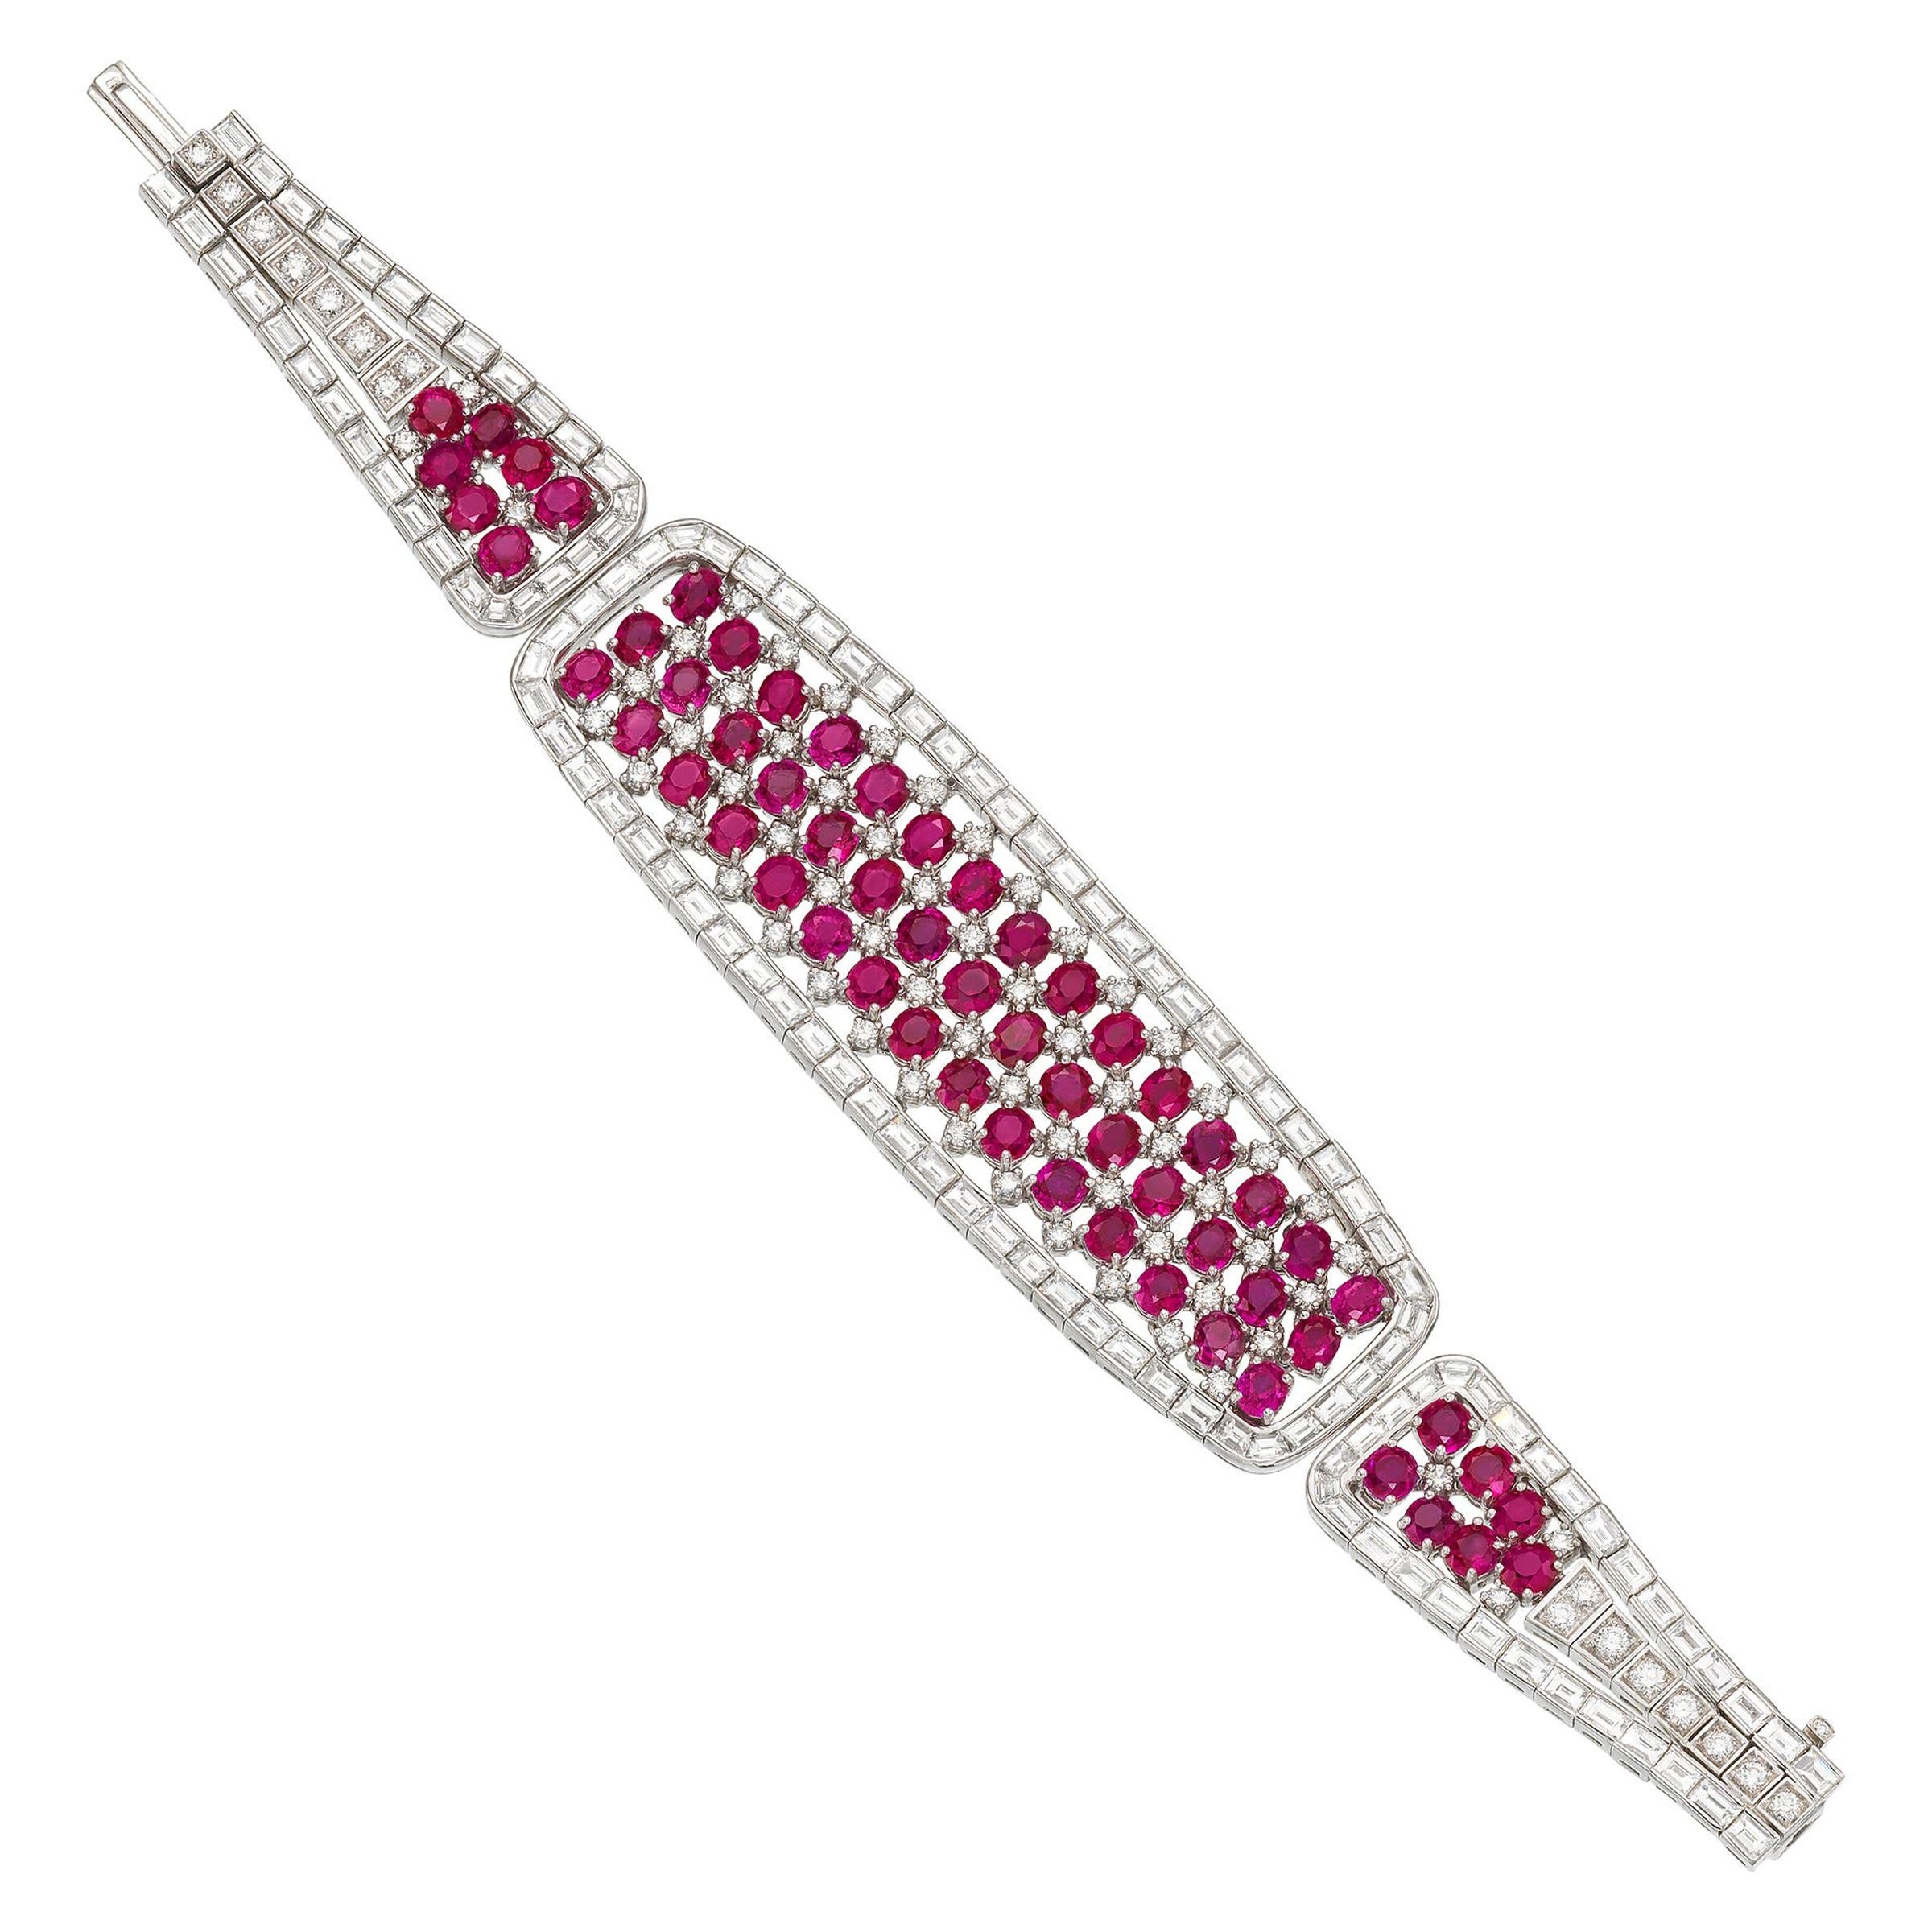 Bulgari Exquisite Burma Ruby Diamond Estate Bracelet in Platinum